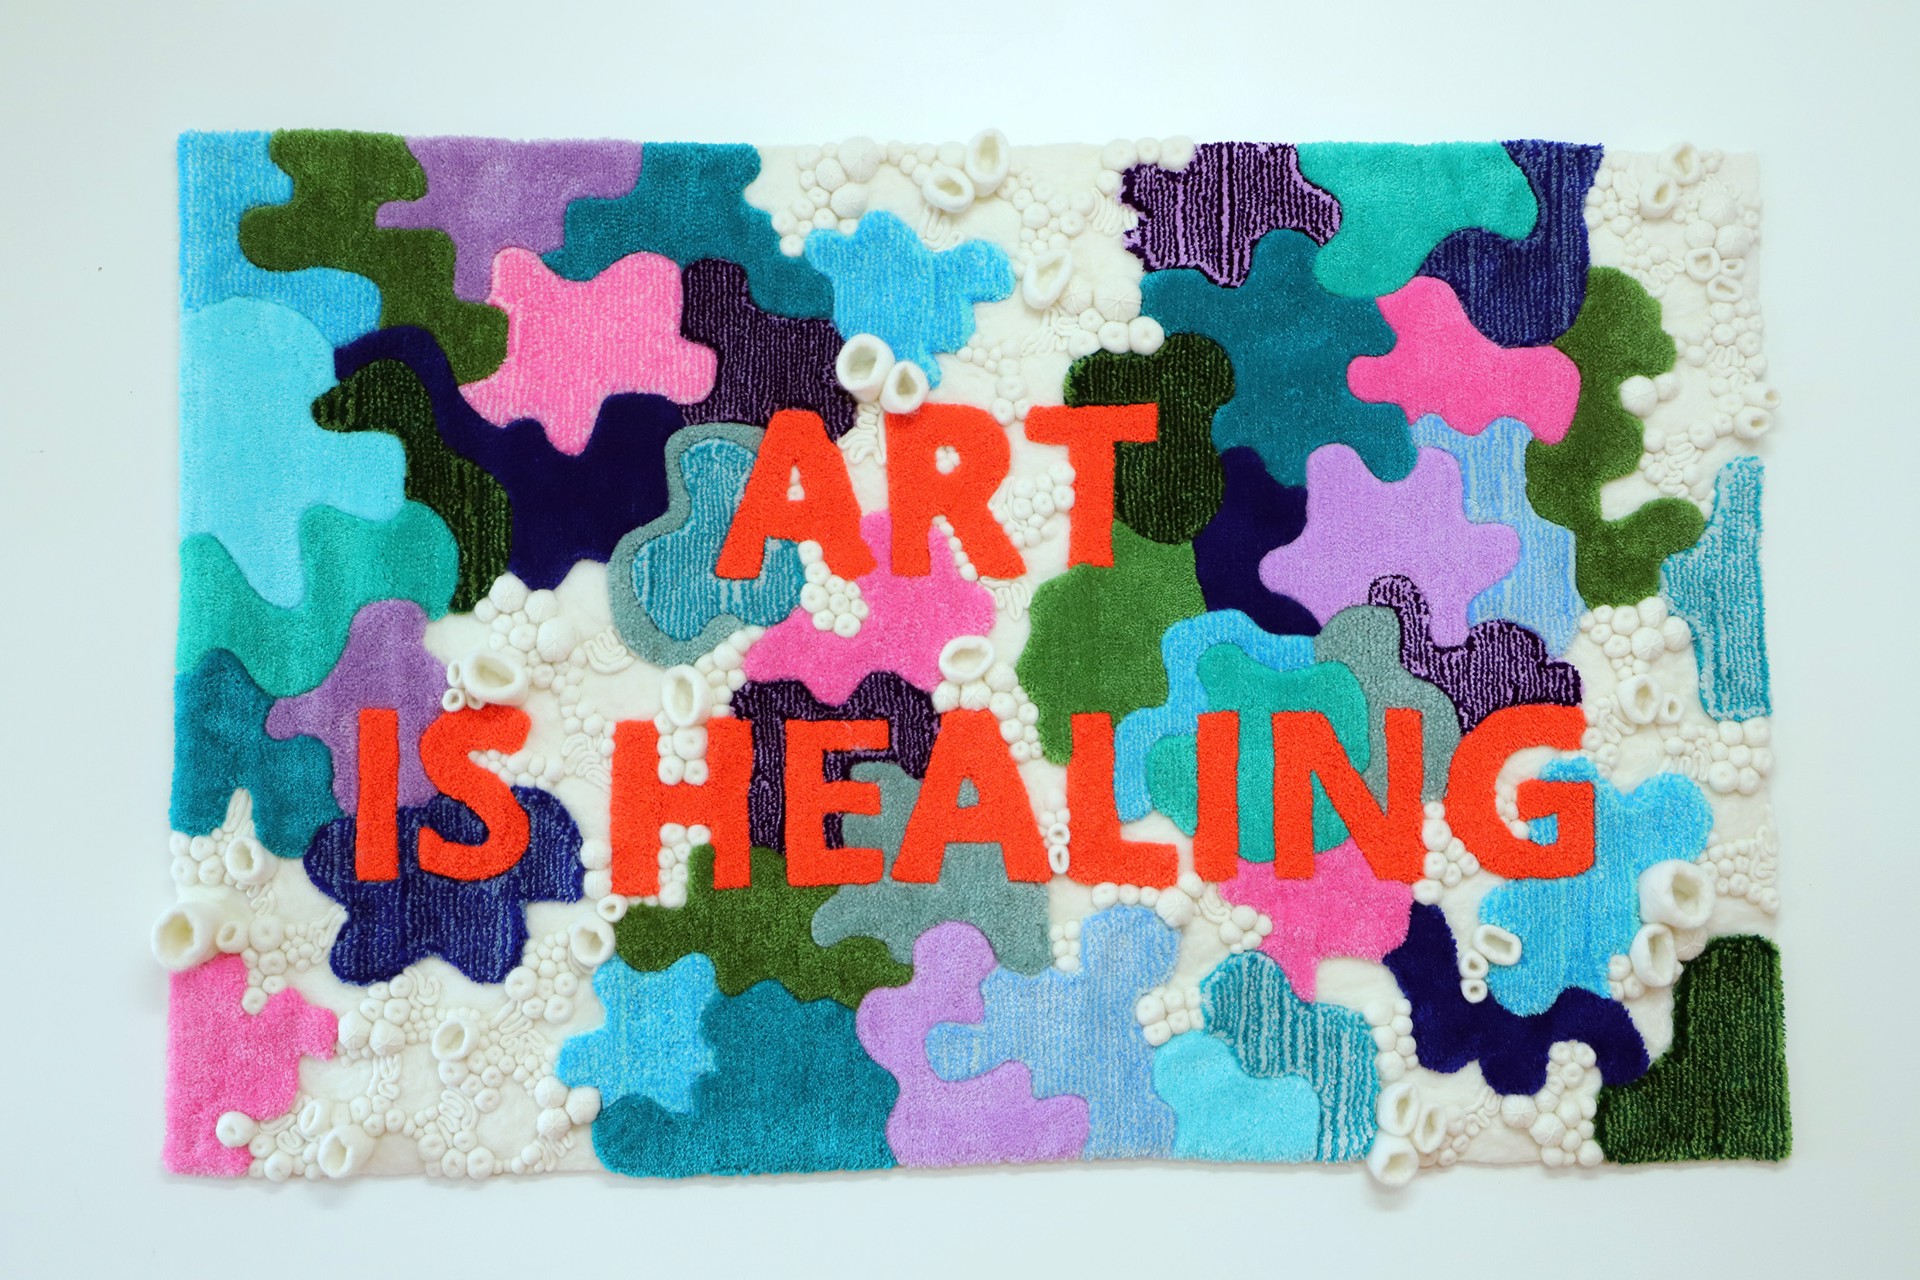 Art is Healing by Felicia Murray